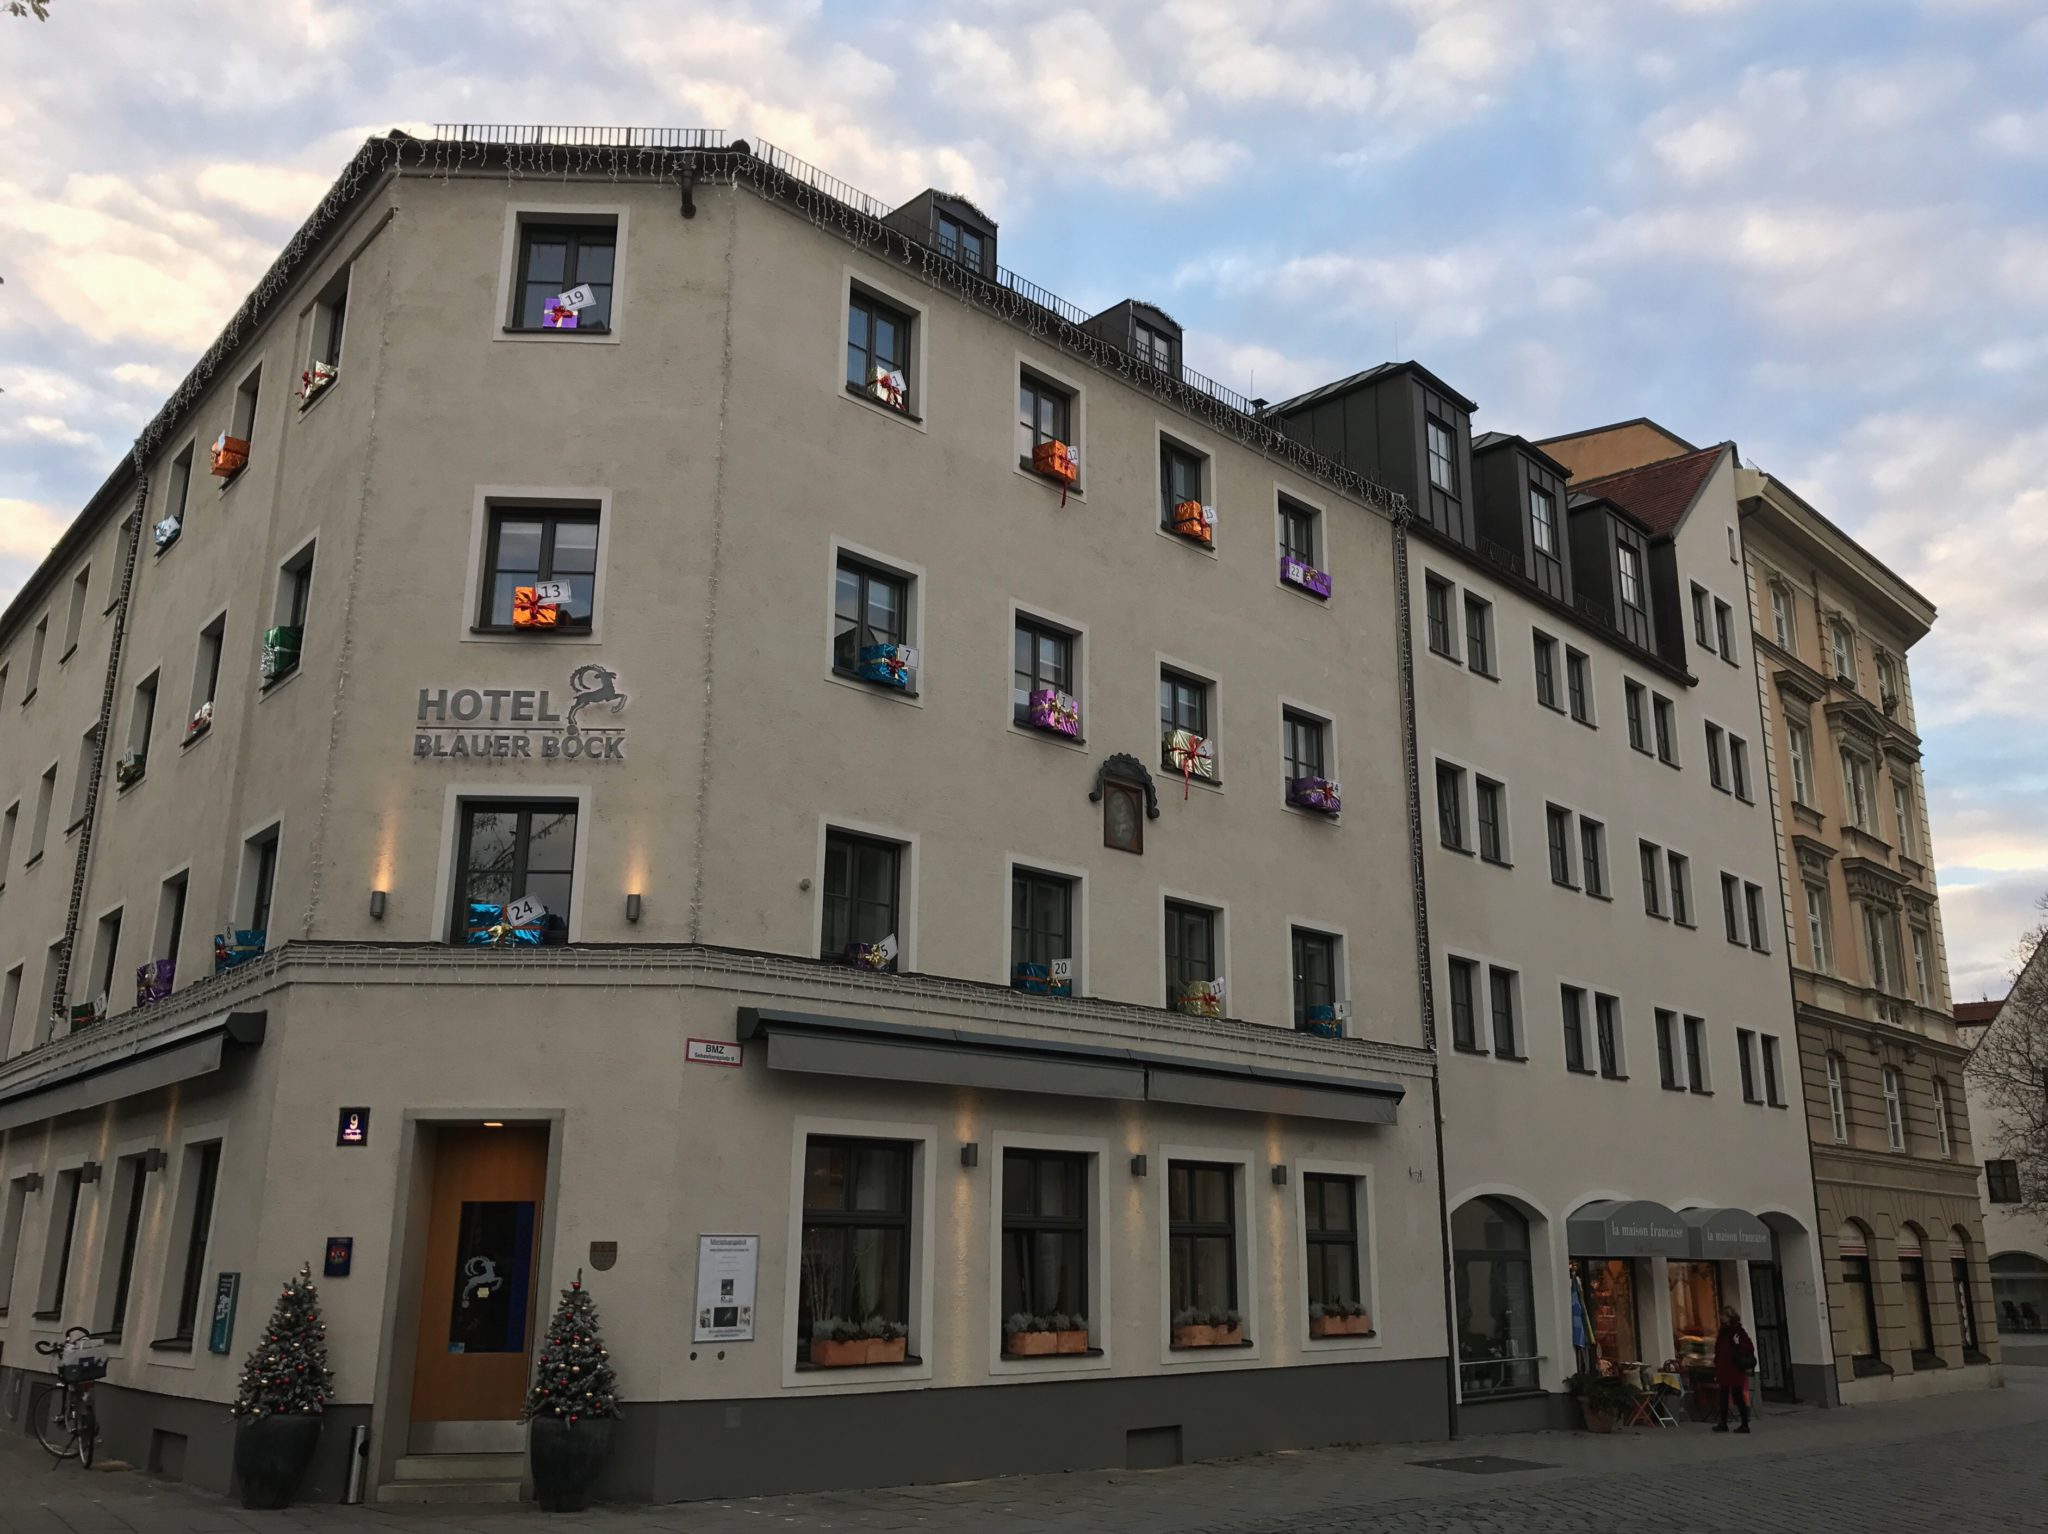 Hotel Blauer Bock Munich